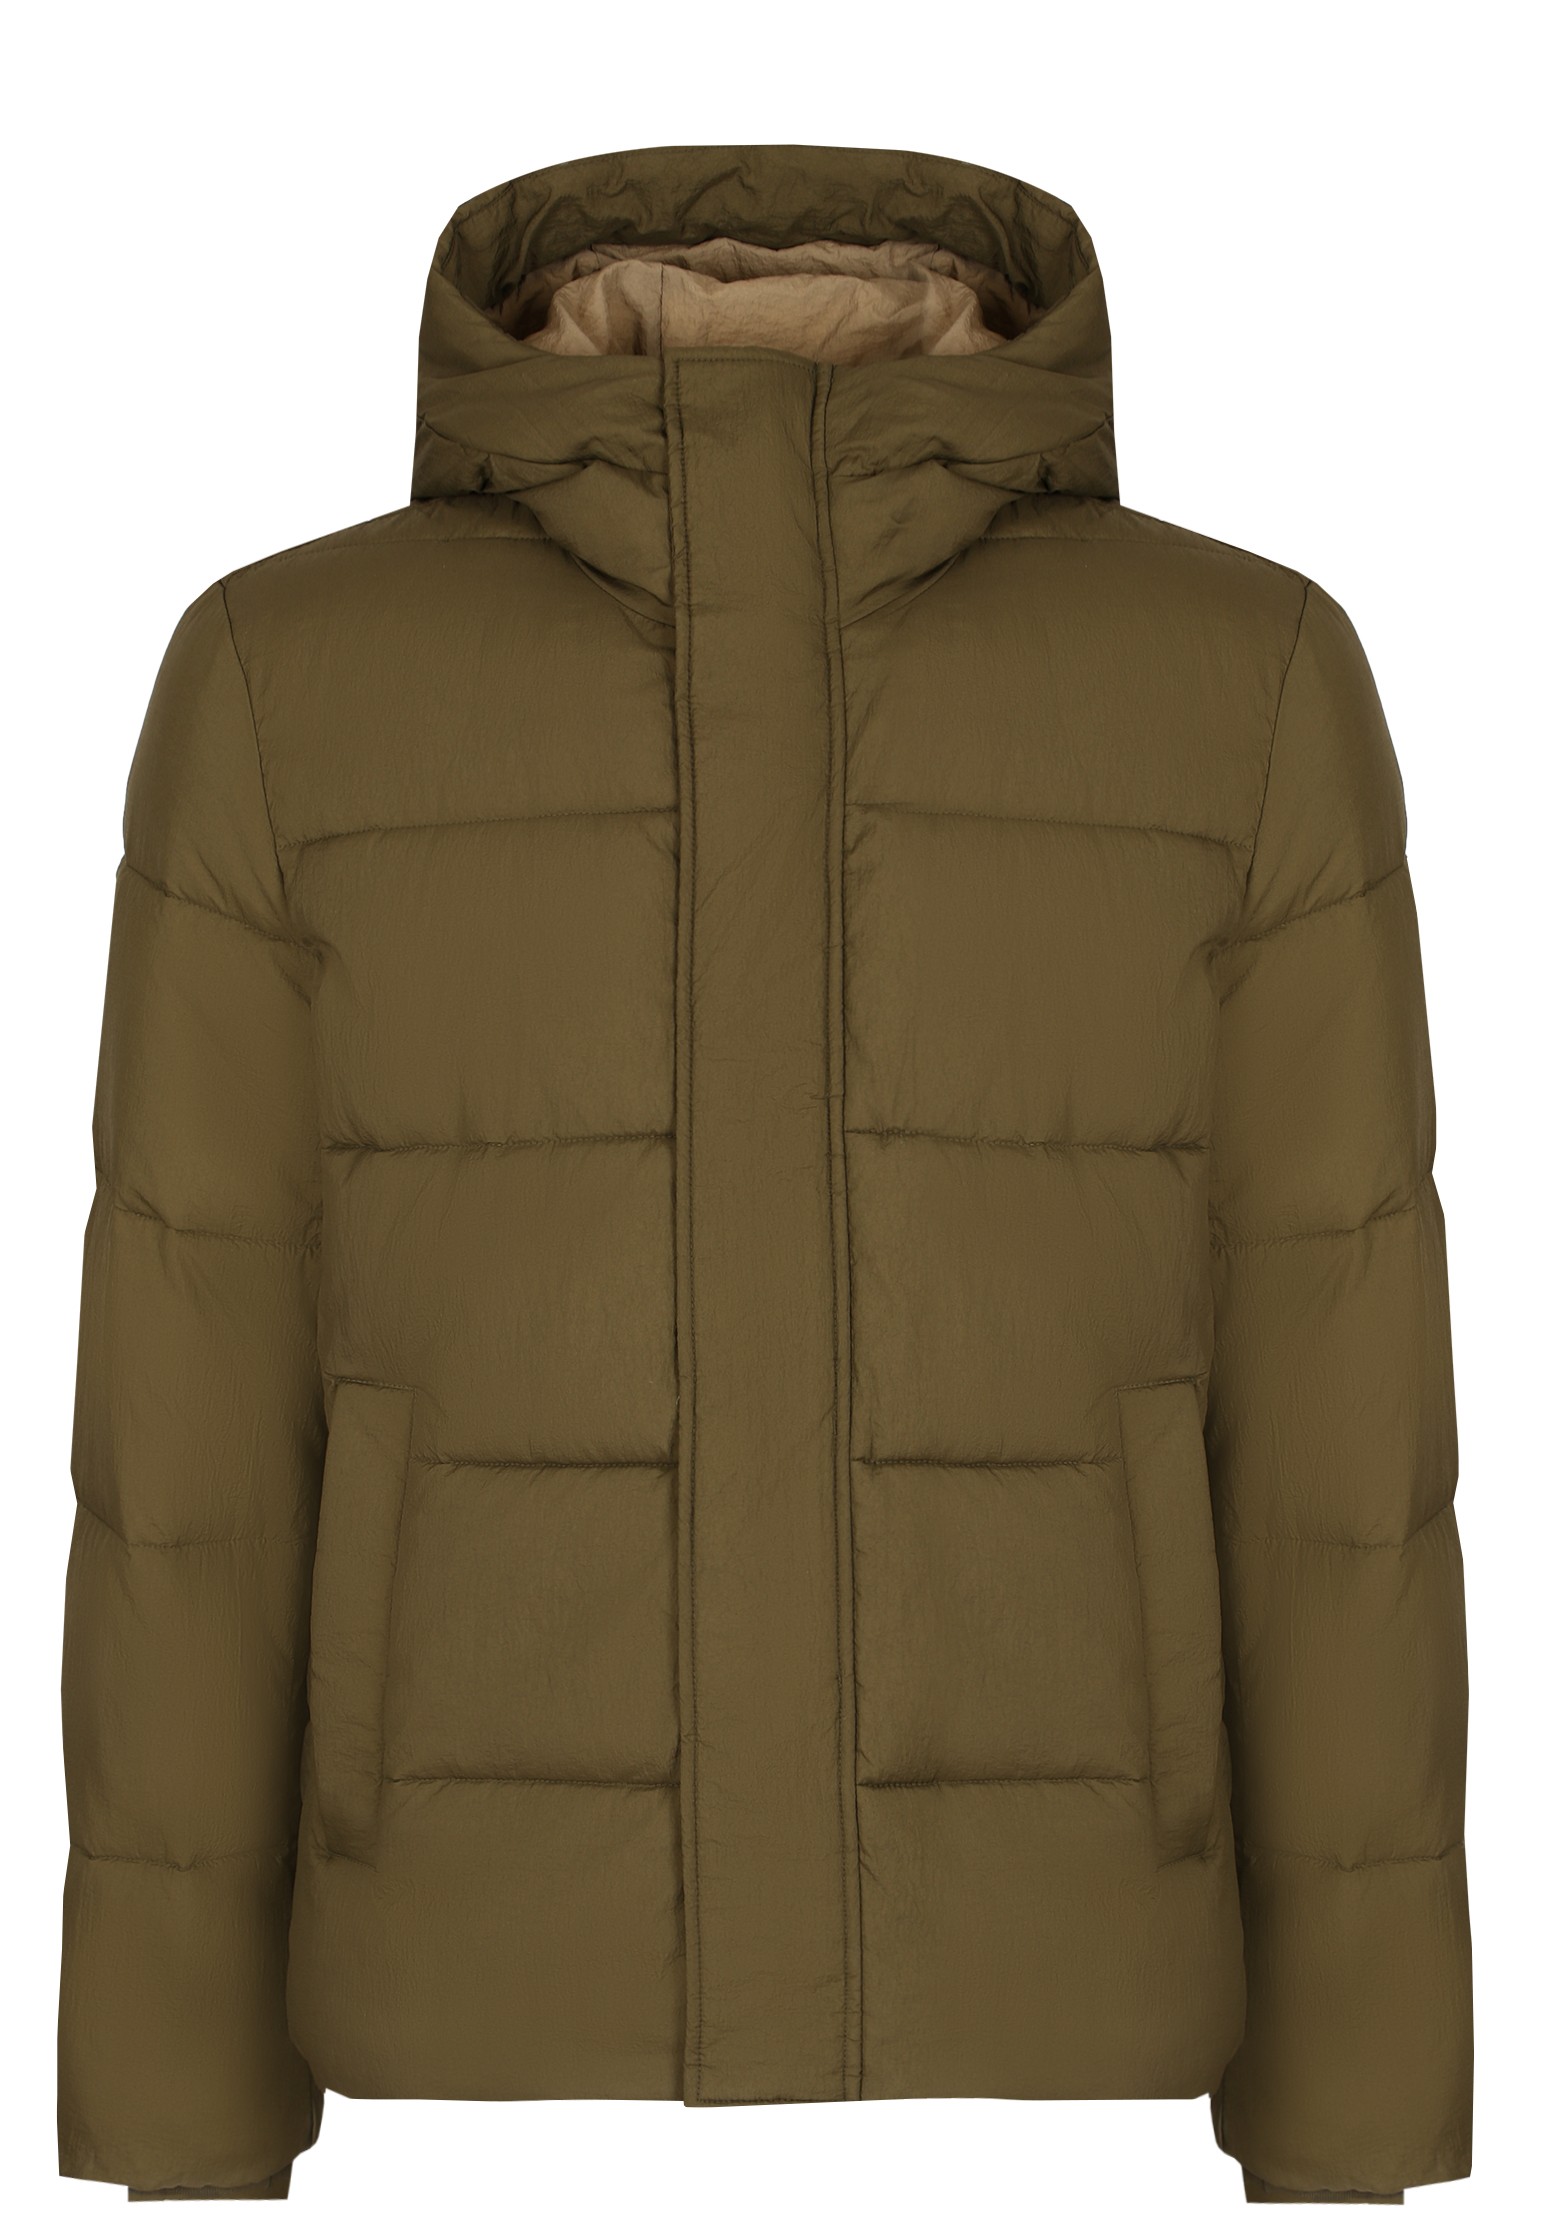 Зимняя куртка мужская Strellson 137049 зеленая 48 EU